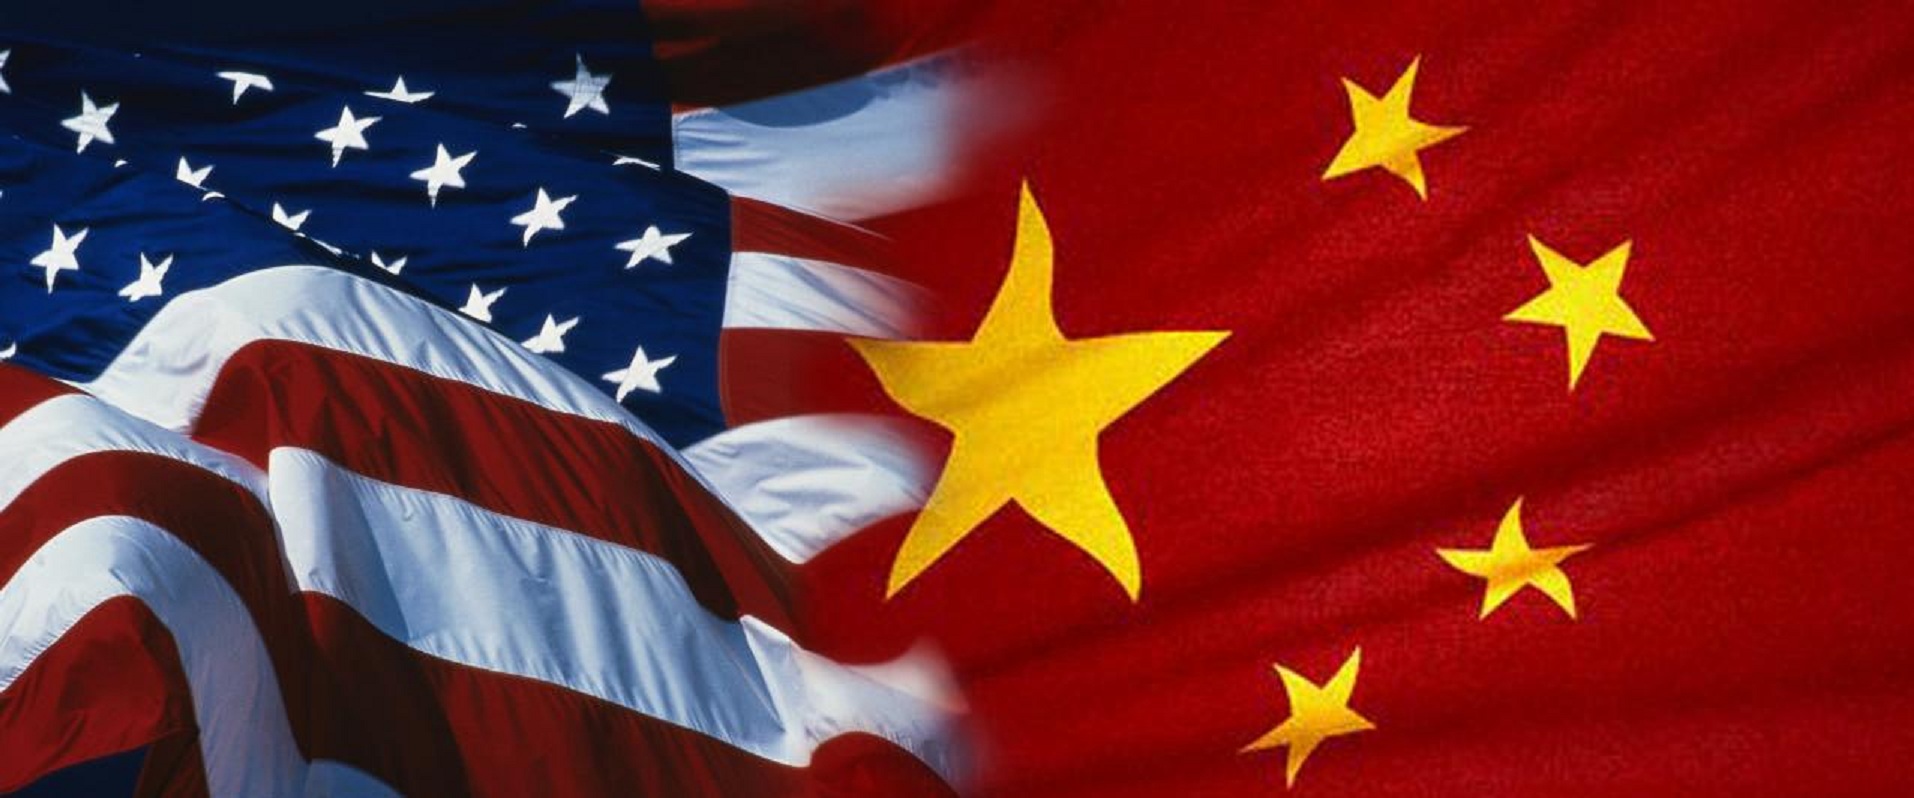 علم الصين والولايات المتحدة 1